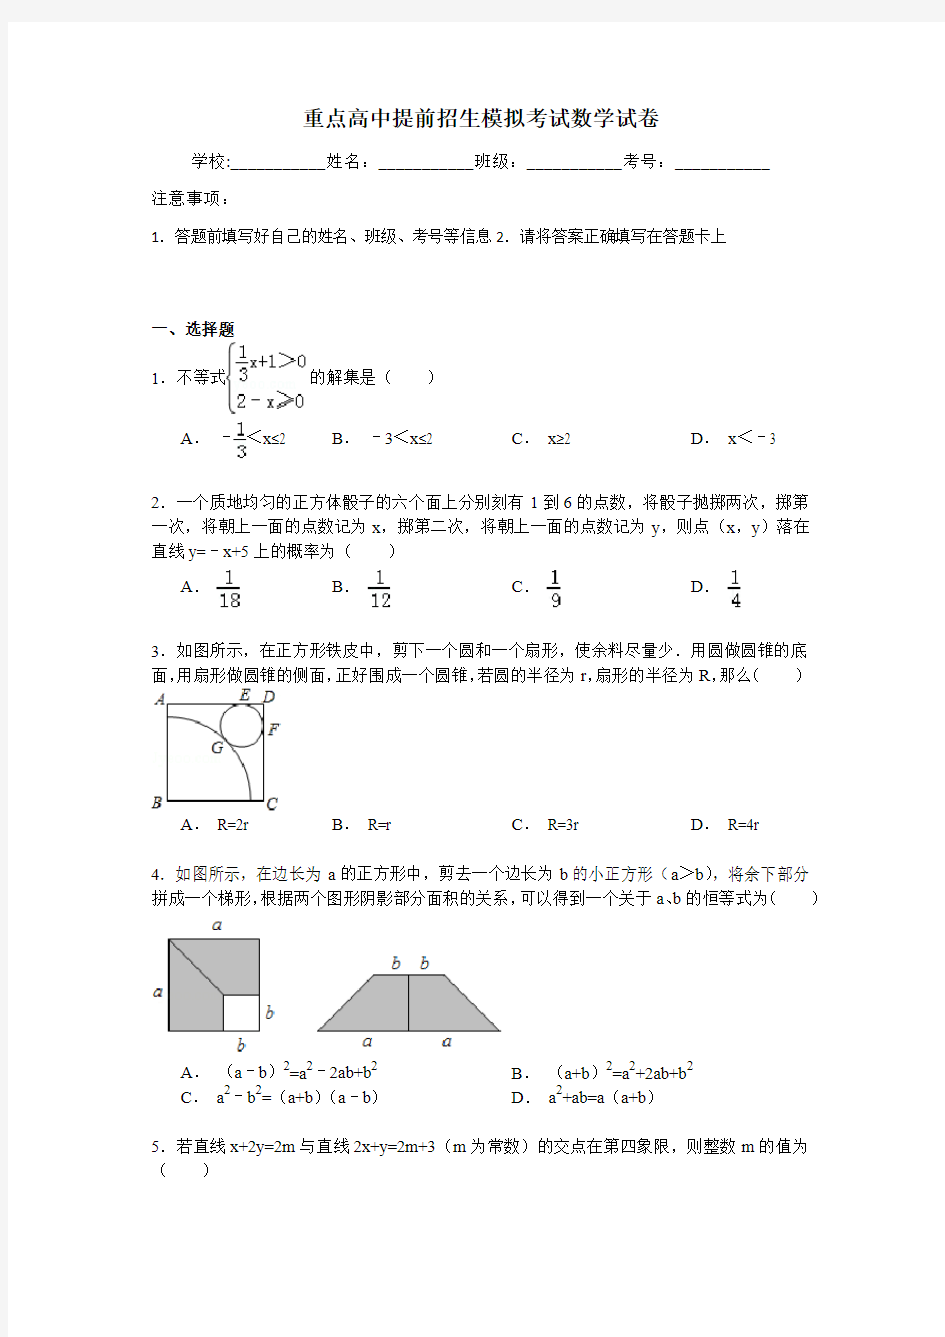 【初升高】福建省厦门第一中学2020中考提前自主招生数学模拟试卷(9套)附解析